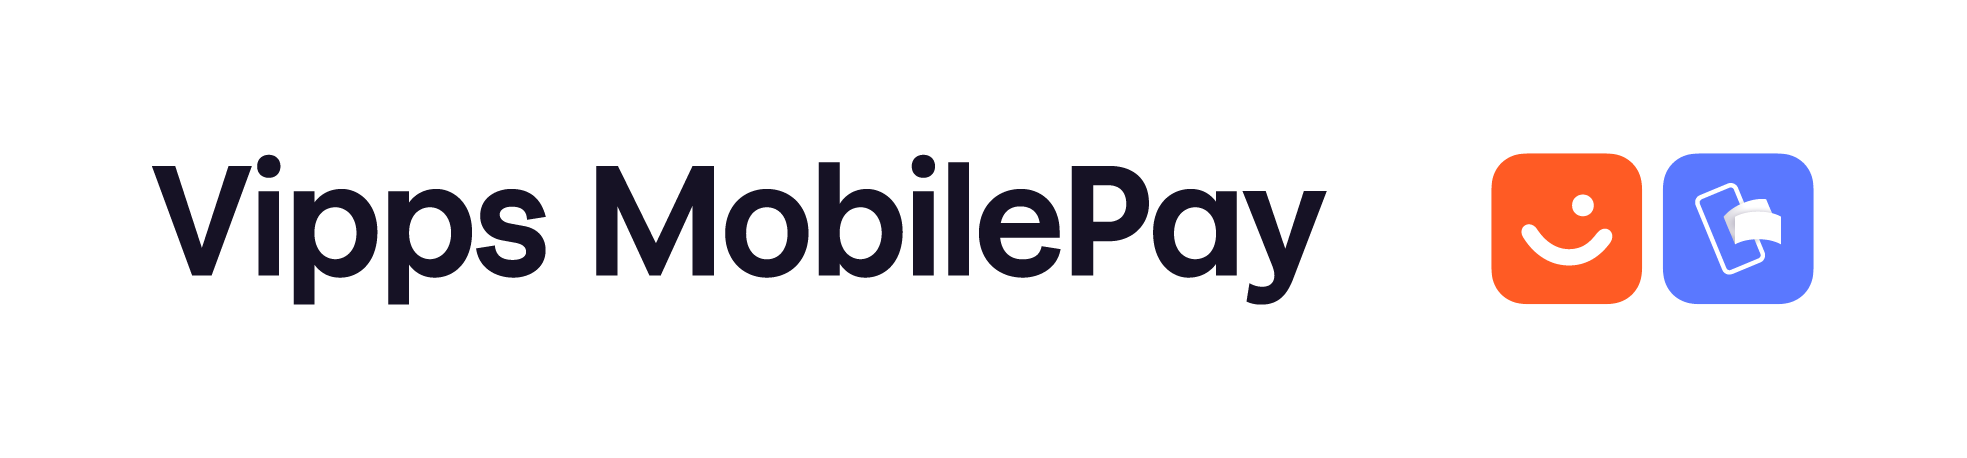 VippsMobilePay-logo